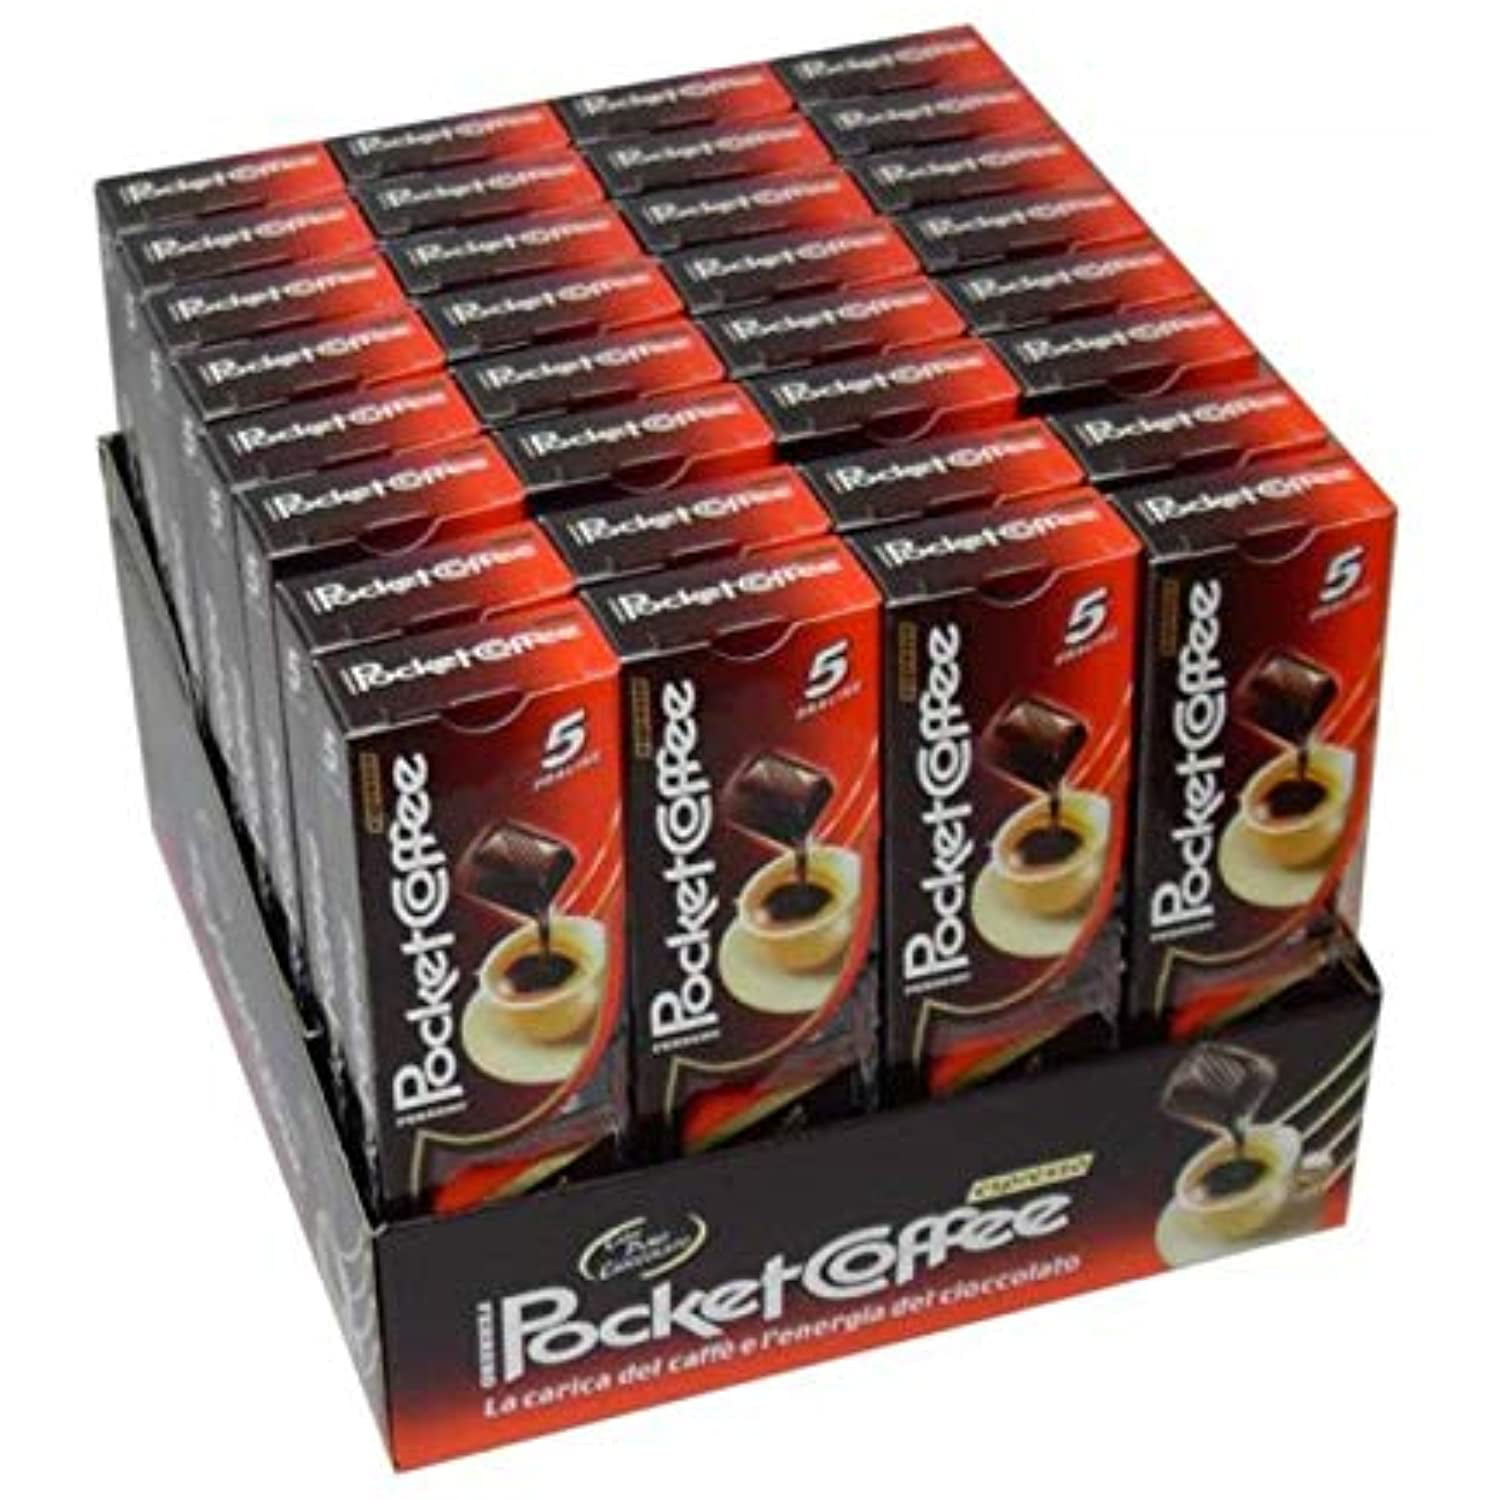 Pocket Coffee Espresso Chocolate Speciality Ferrero, 6 packs